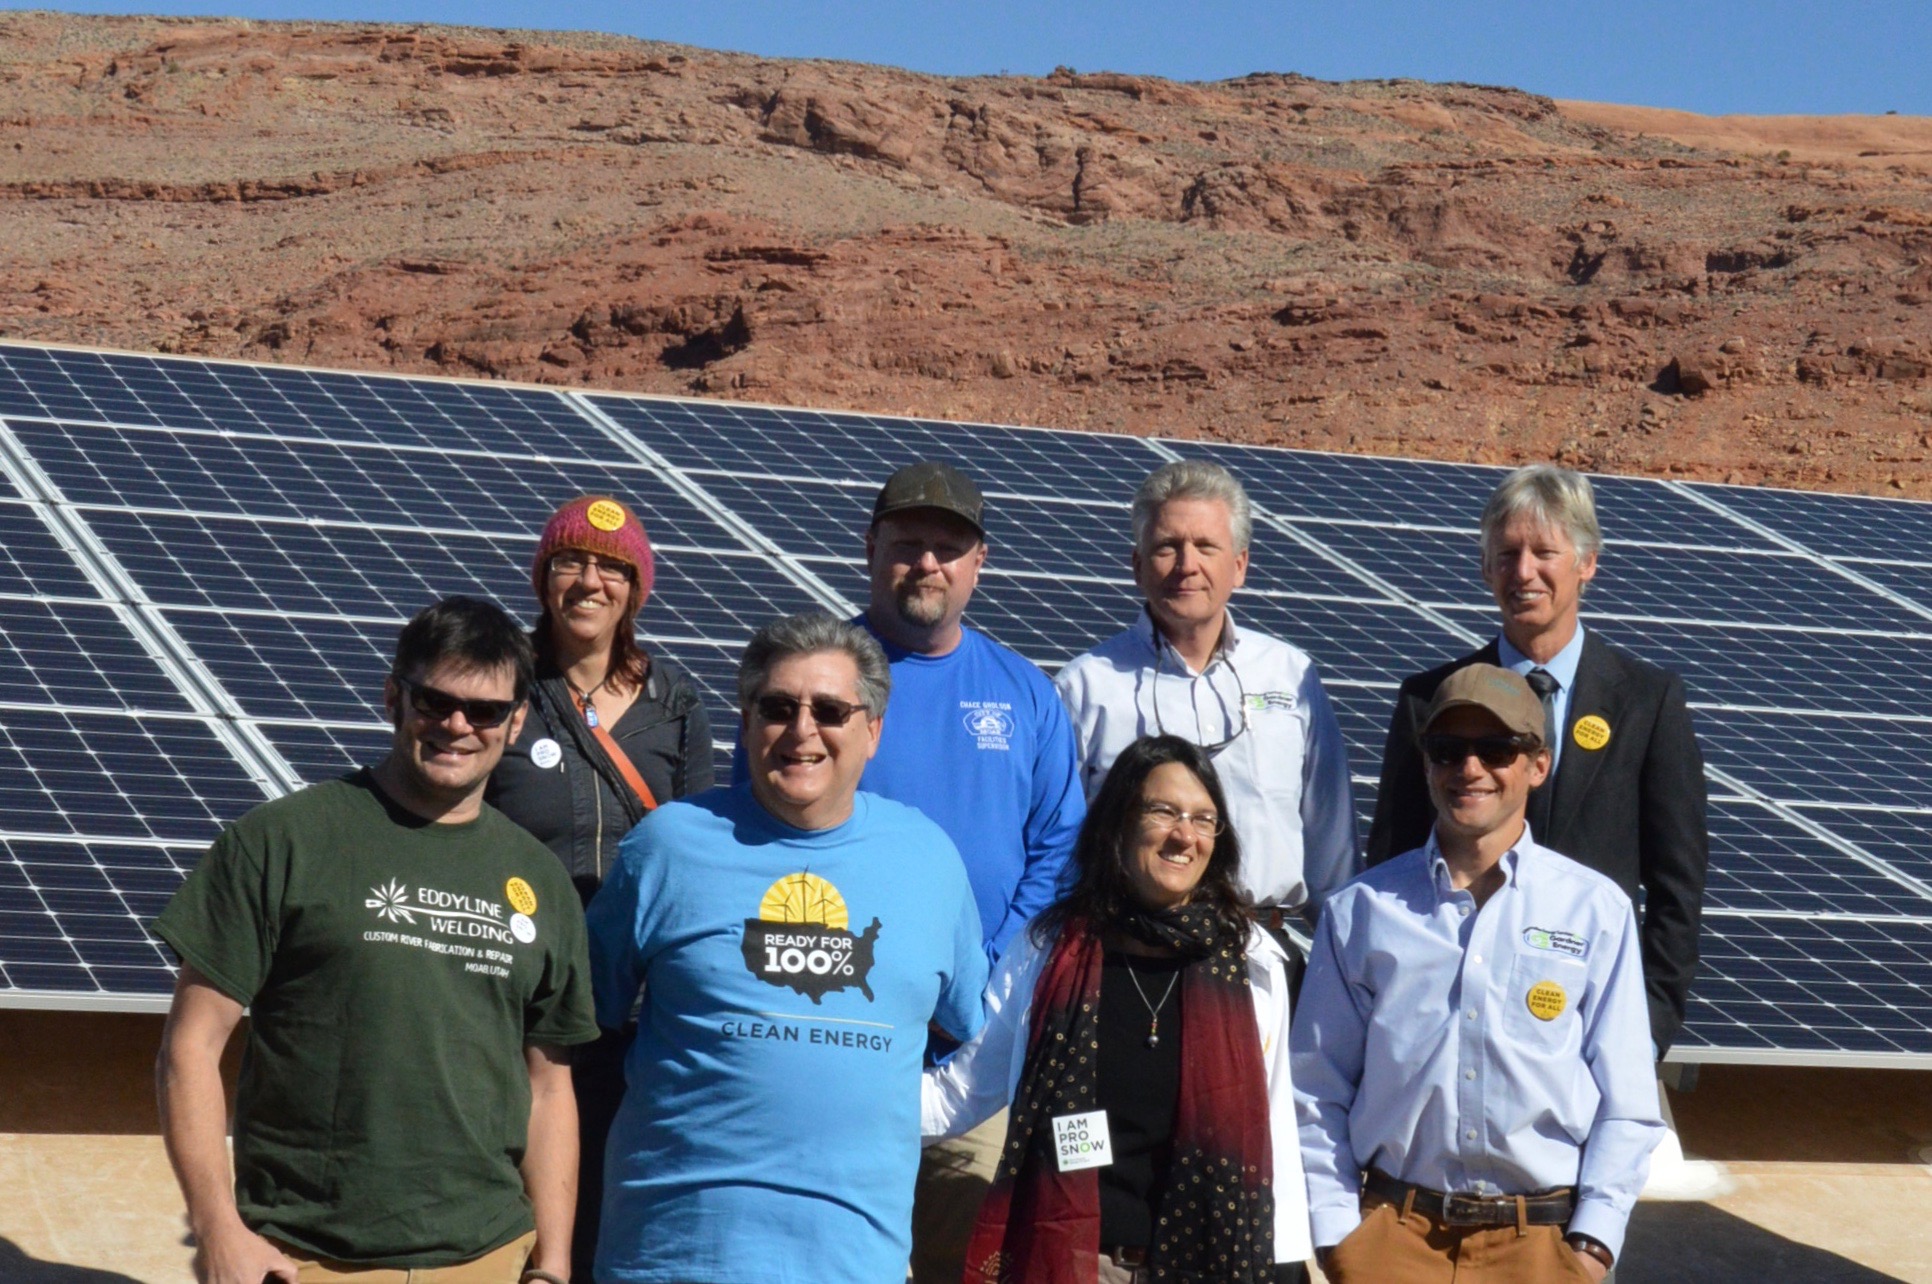 100% clean energy advocates in Moab, Utah